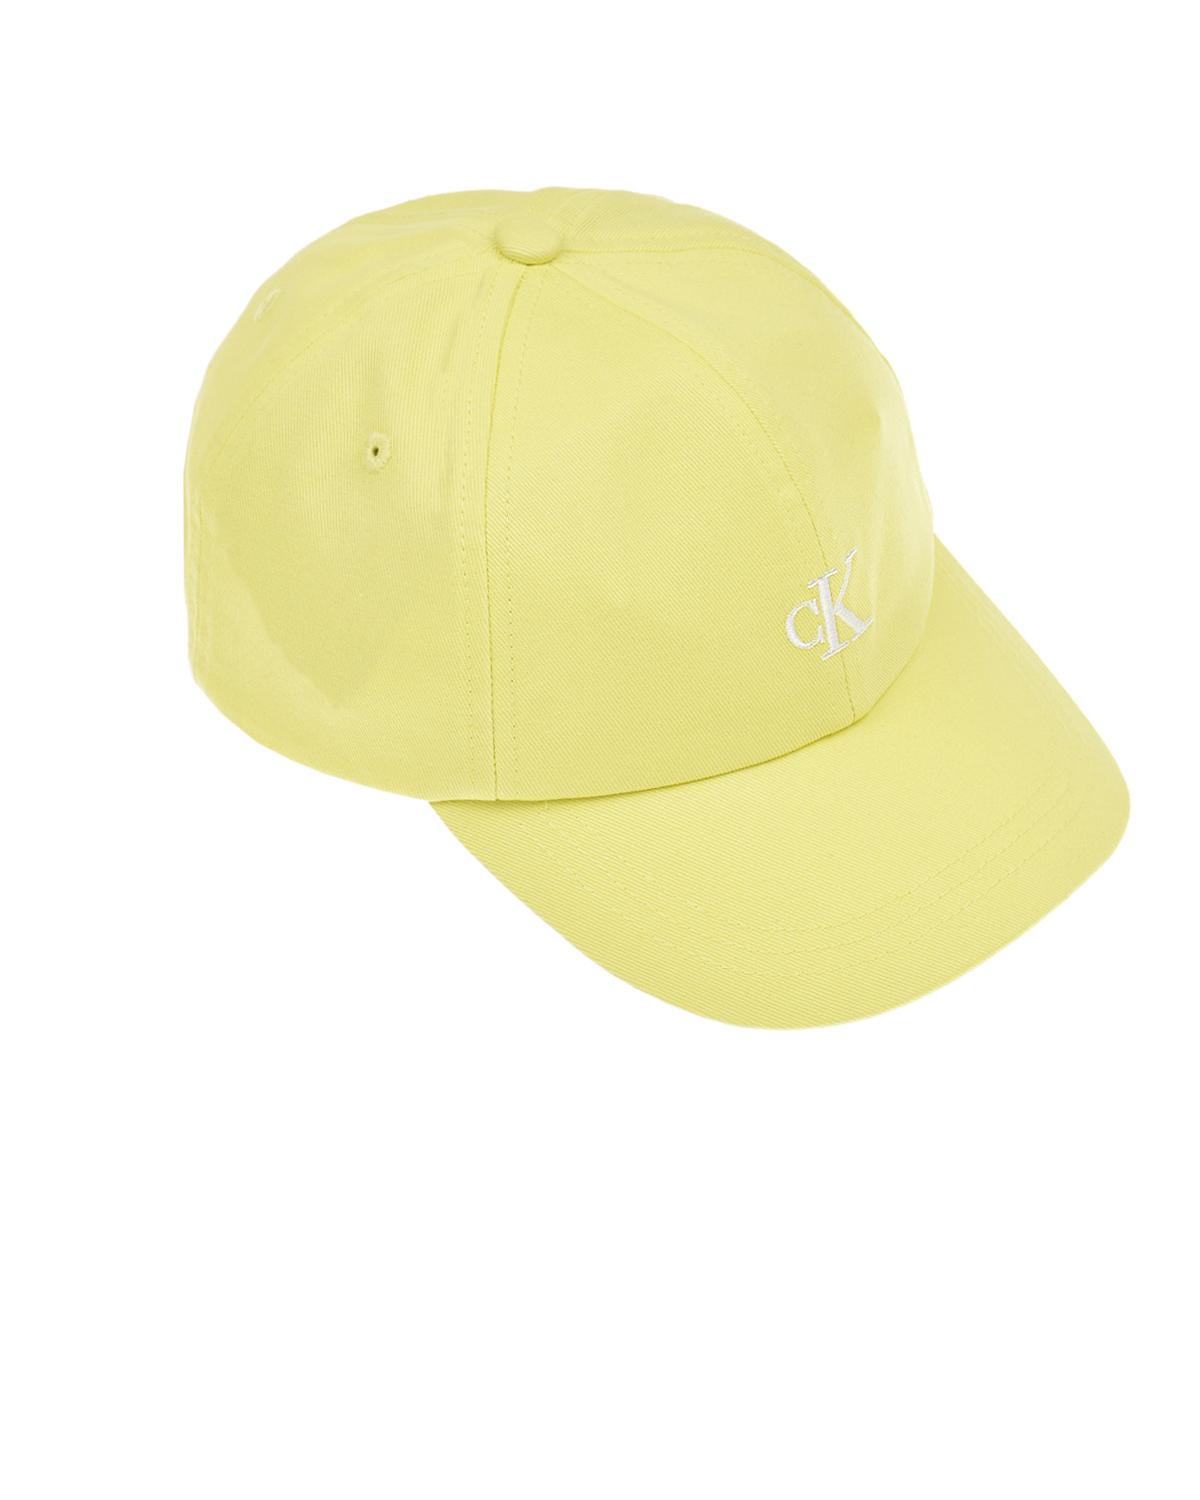 Желтая бейсболка с белым логотипом Calvin Klein детская, размер S, цвет желтый